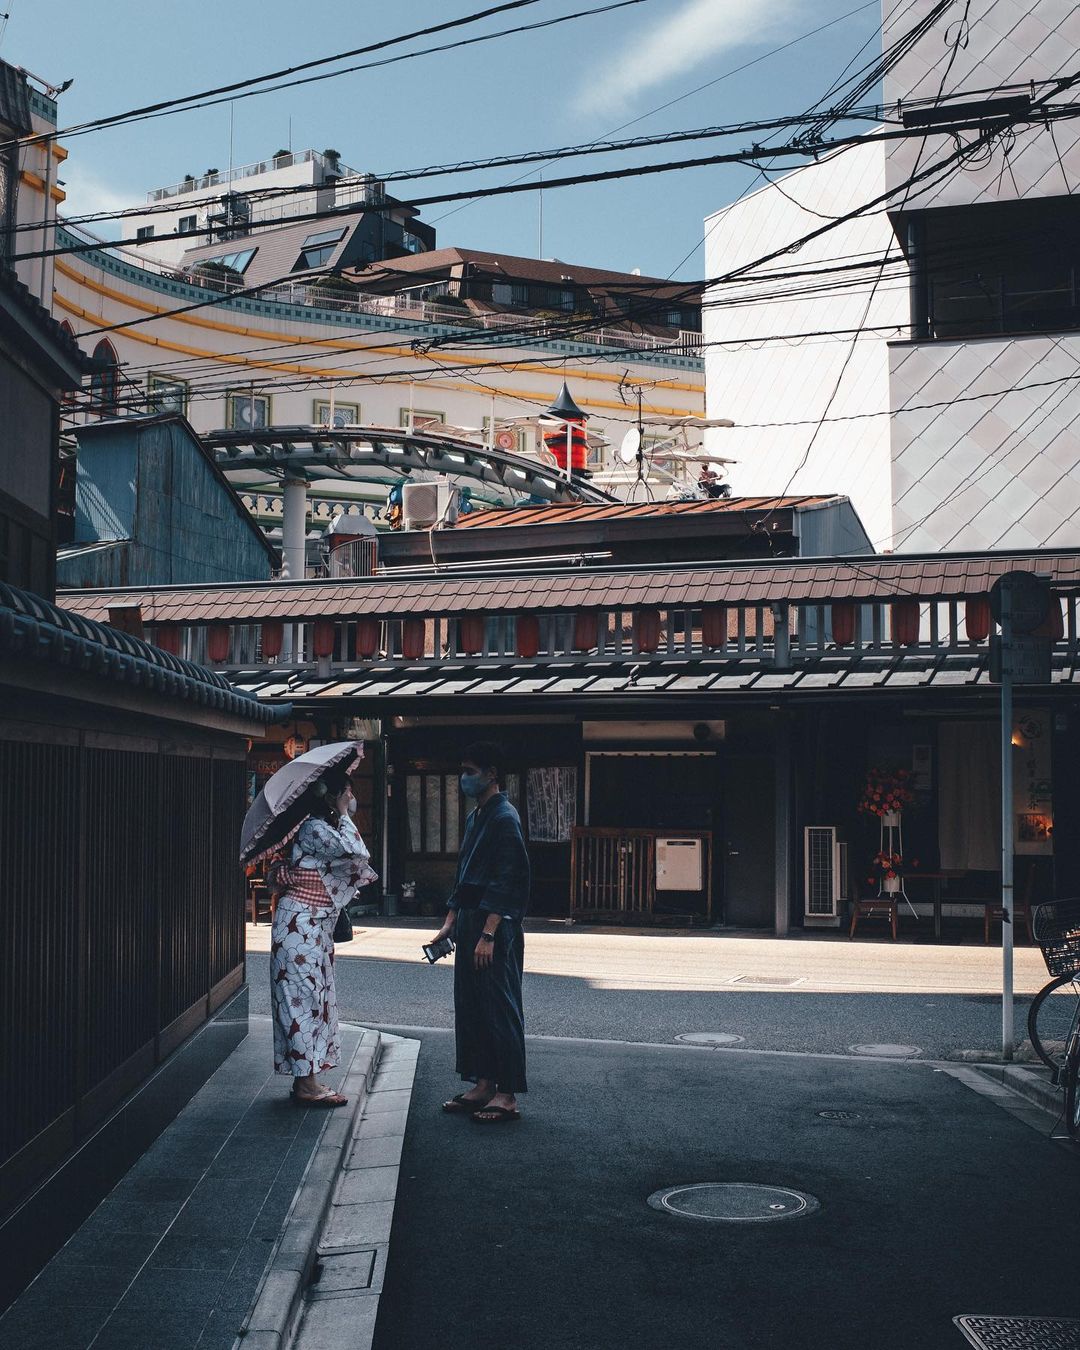 Атмосферные фотографии из Японии Токио, талантливый, исследовать, в Instagram, делится, фотограф, работами, Своими, пейзажи, городские, замечательные, запечатлеть, чтобы, улицы, любит, фотографсамоучка, фотографии, уличной, пейзажной, основном